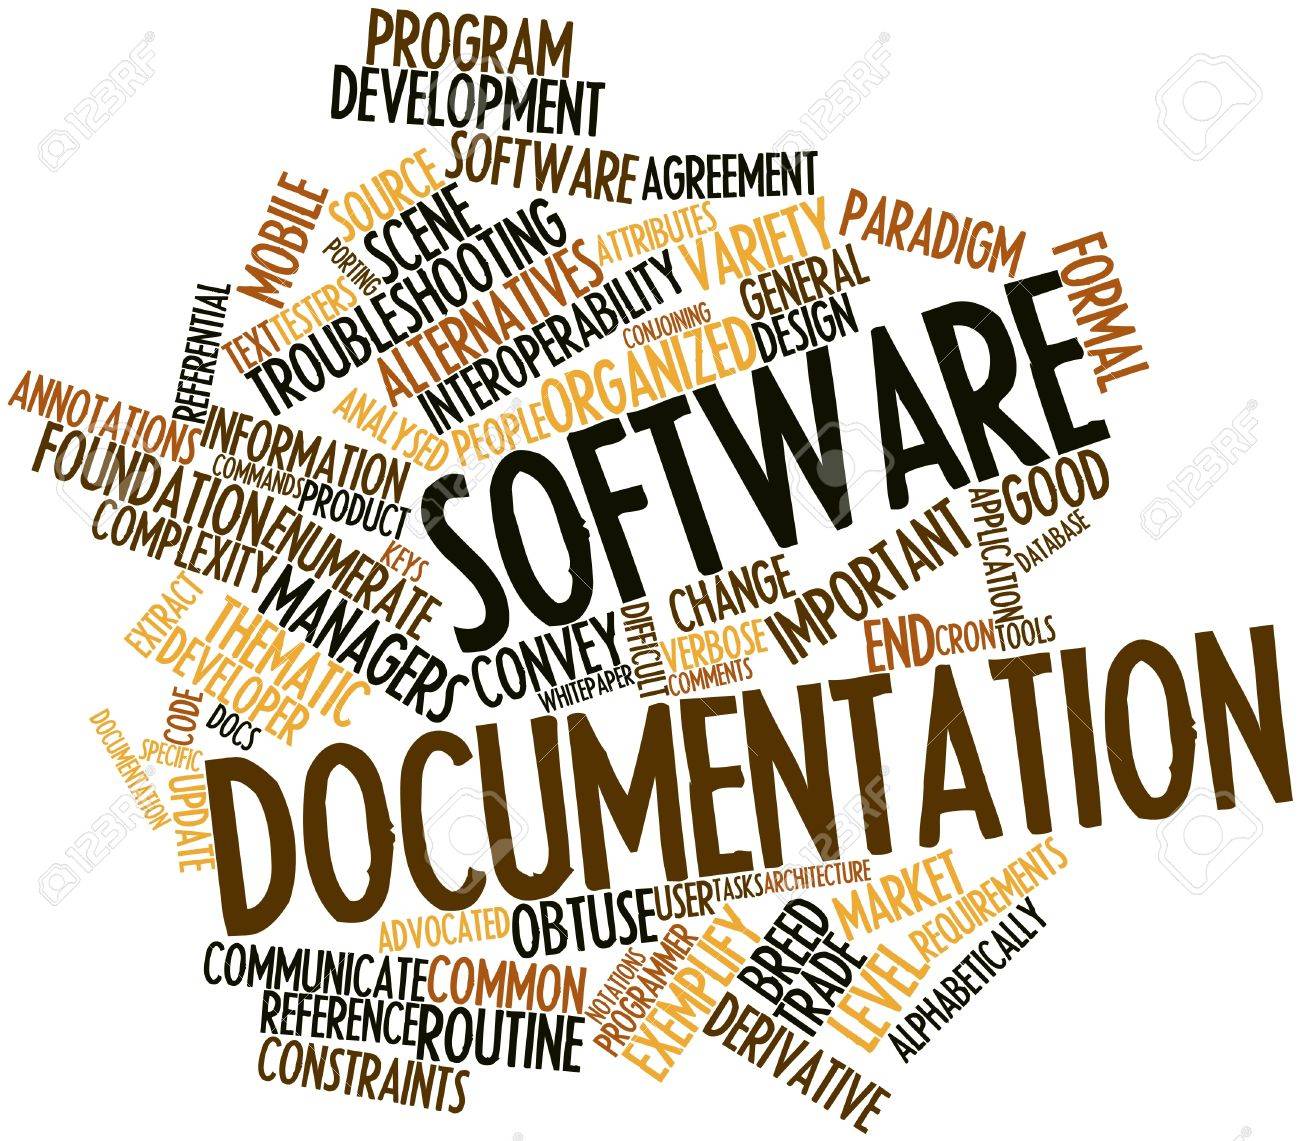 soutech ventures software documentation